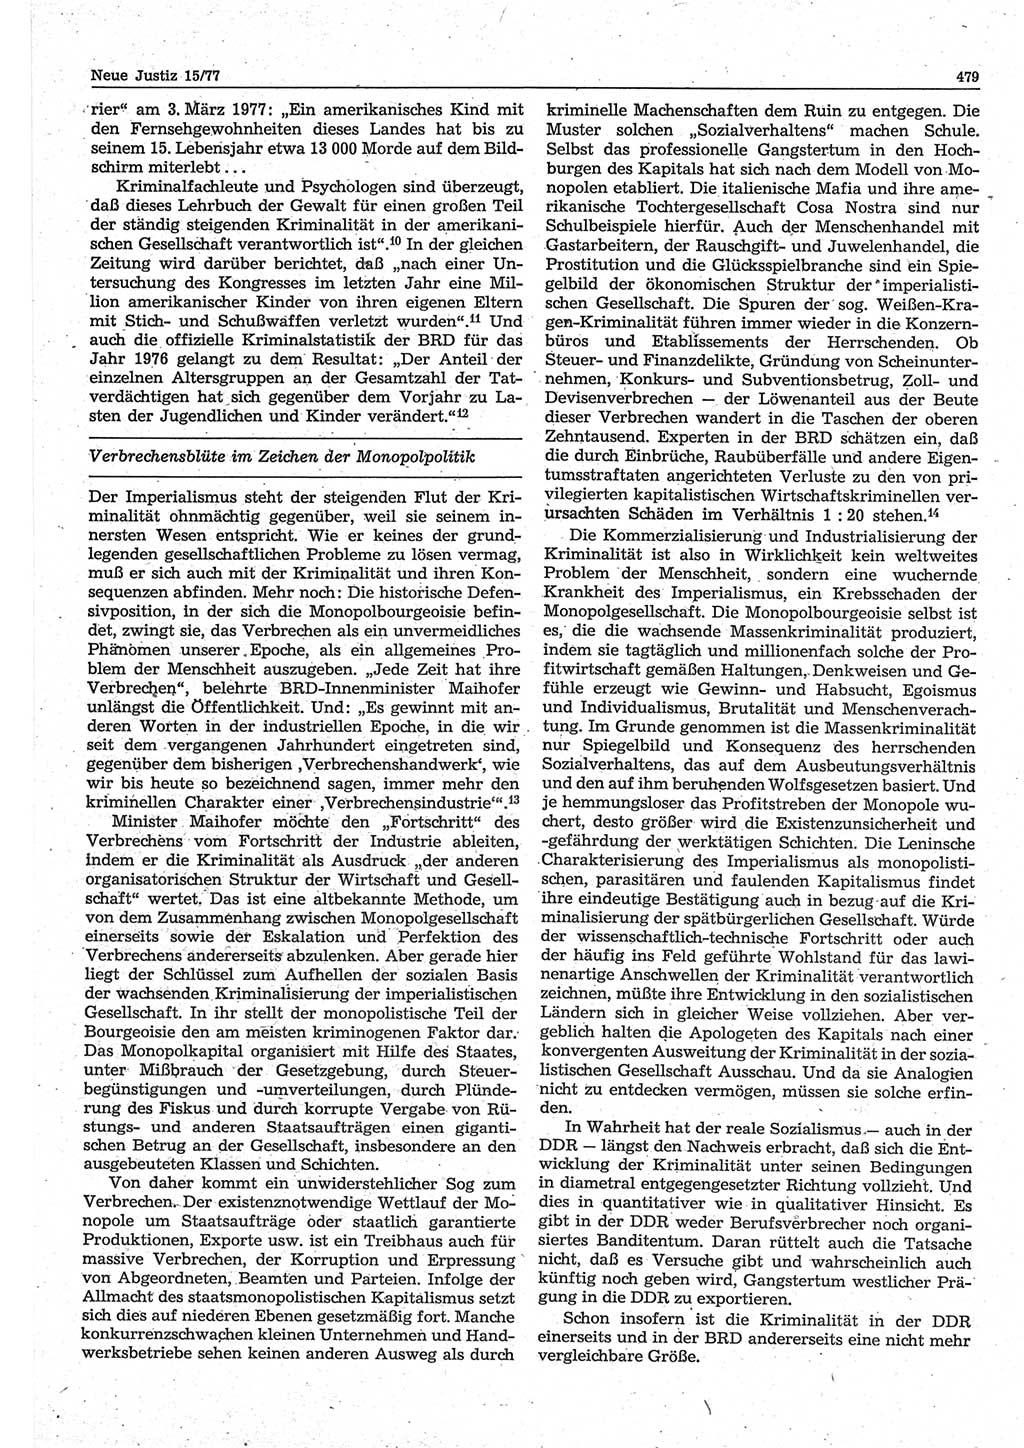 Neue Justiz (NJ), Zeitschrift für Recht und Rechtswissenschaft-Zeitschrift, sozialistisches Recht und Gesetzlichkeit, 31. Jahrgang 1977, Seite 479 (NJ DDR 1977, S. 479)